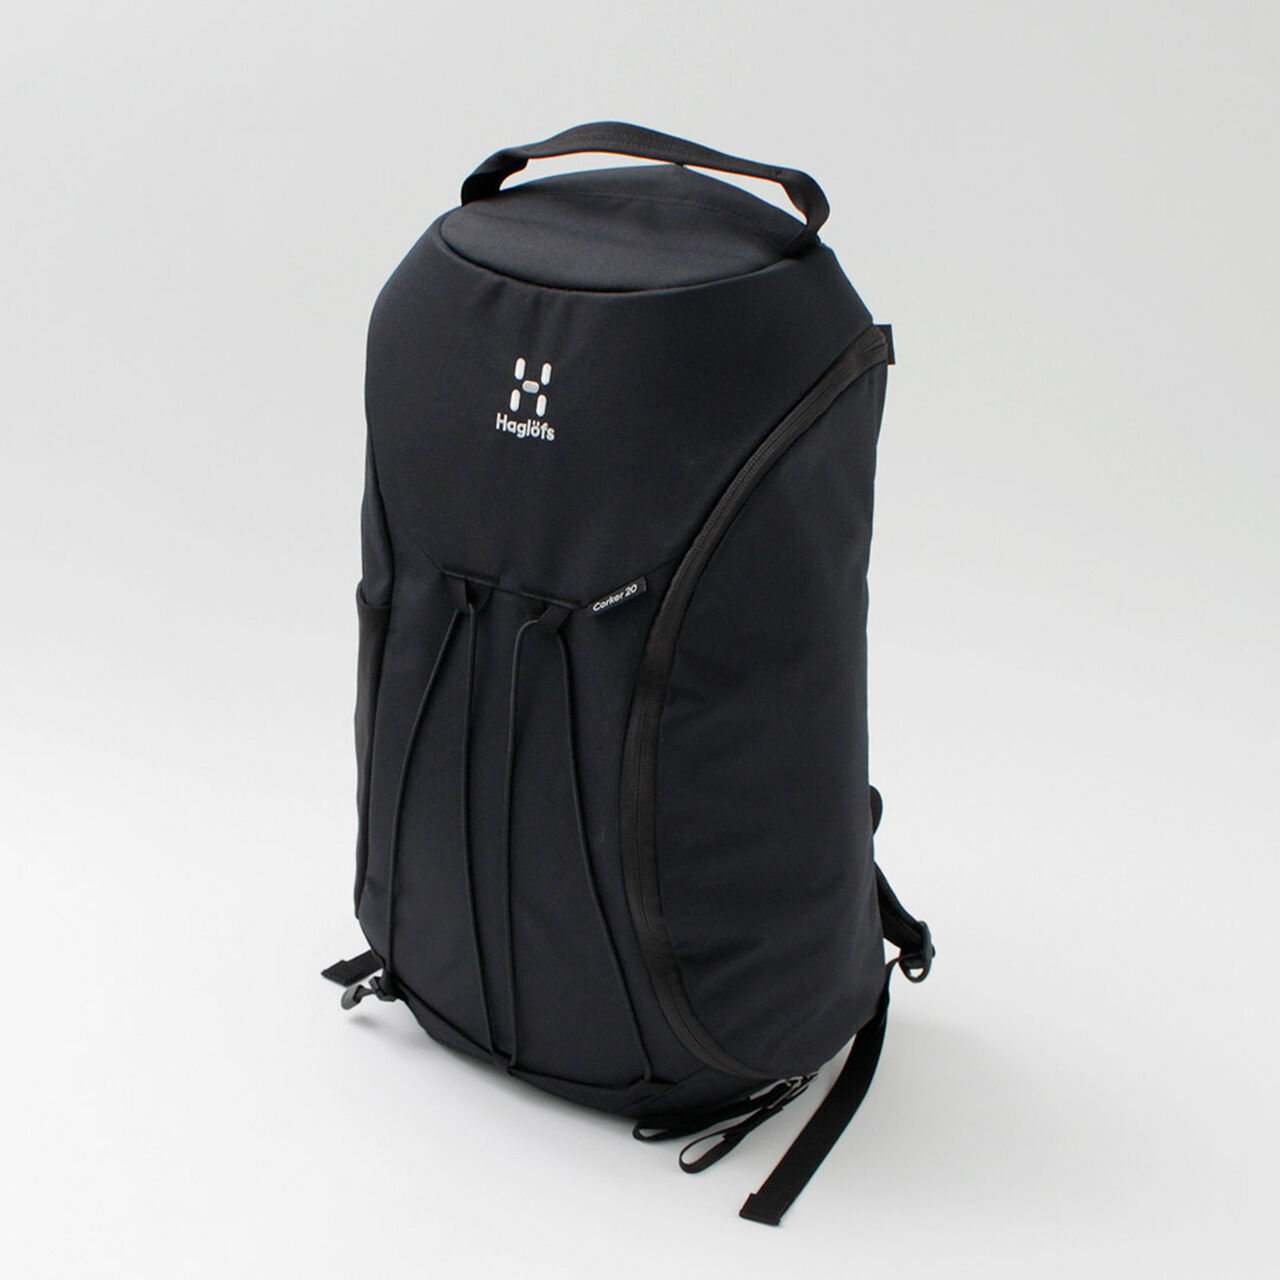 Corker 20 backpack,, large image number 2